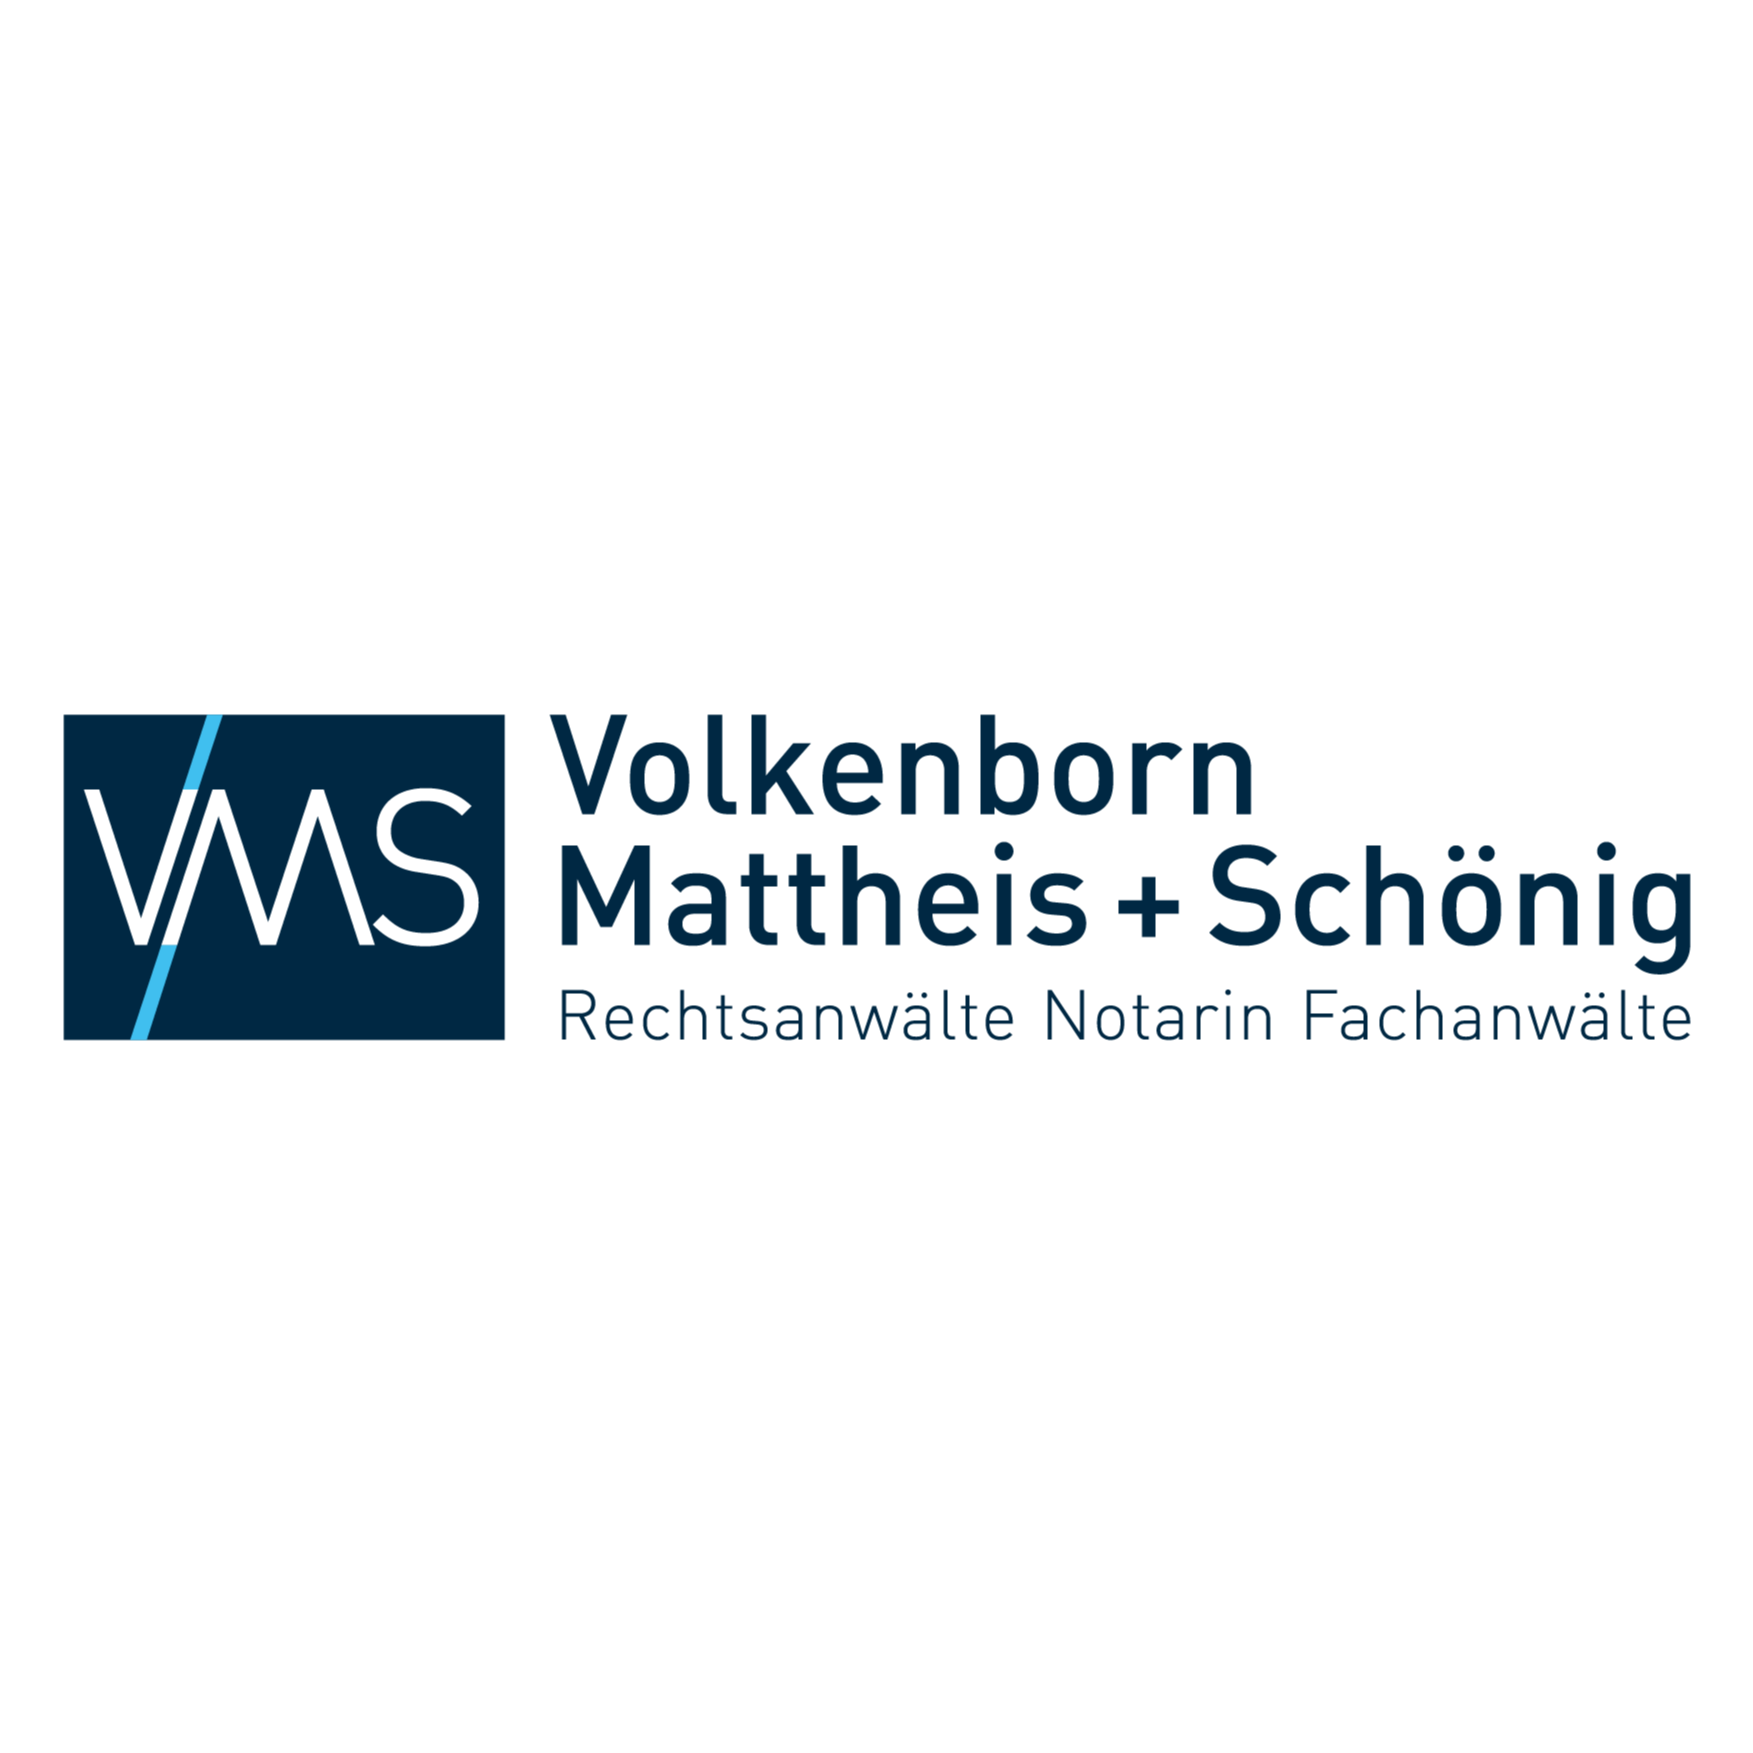 VMS Rechtsanwälte und Notarin in Herten in Westfalen - Logo